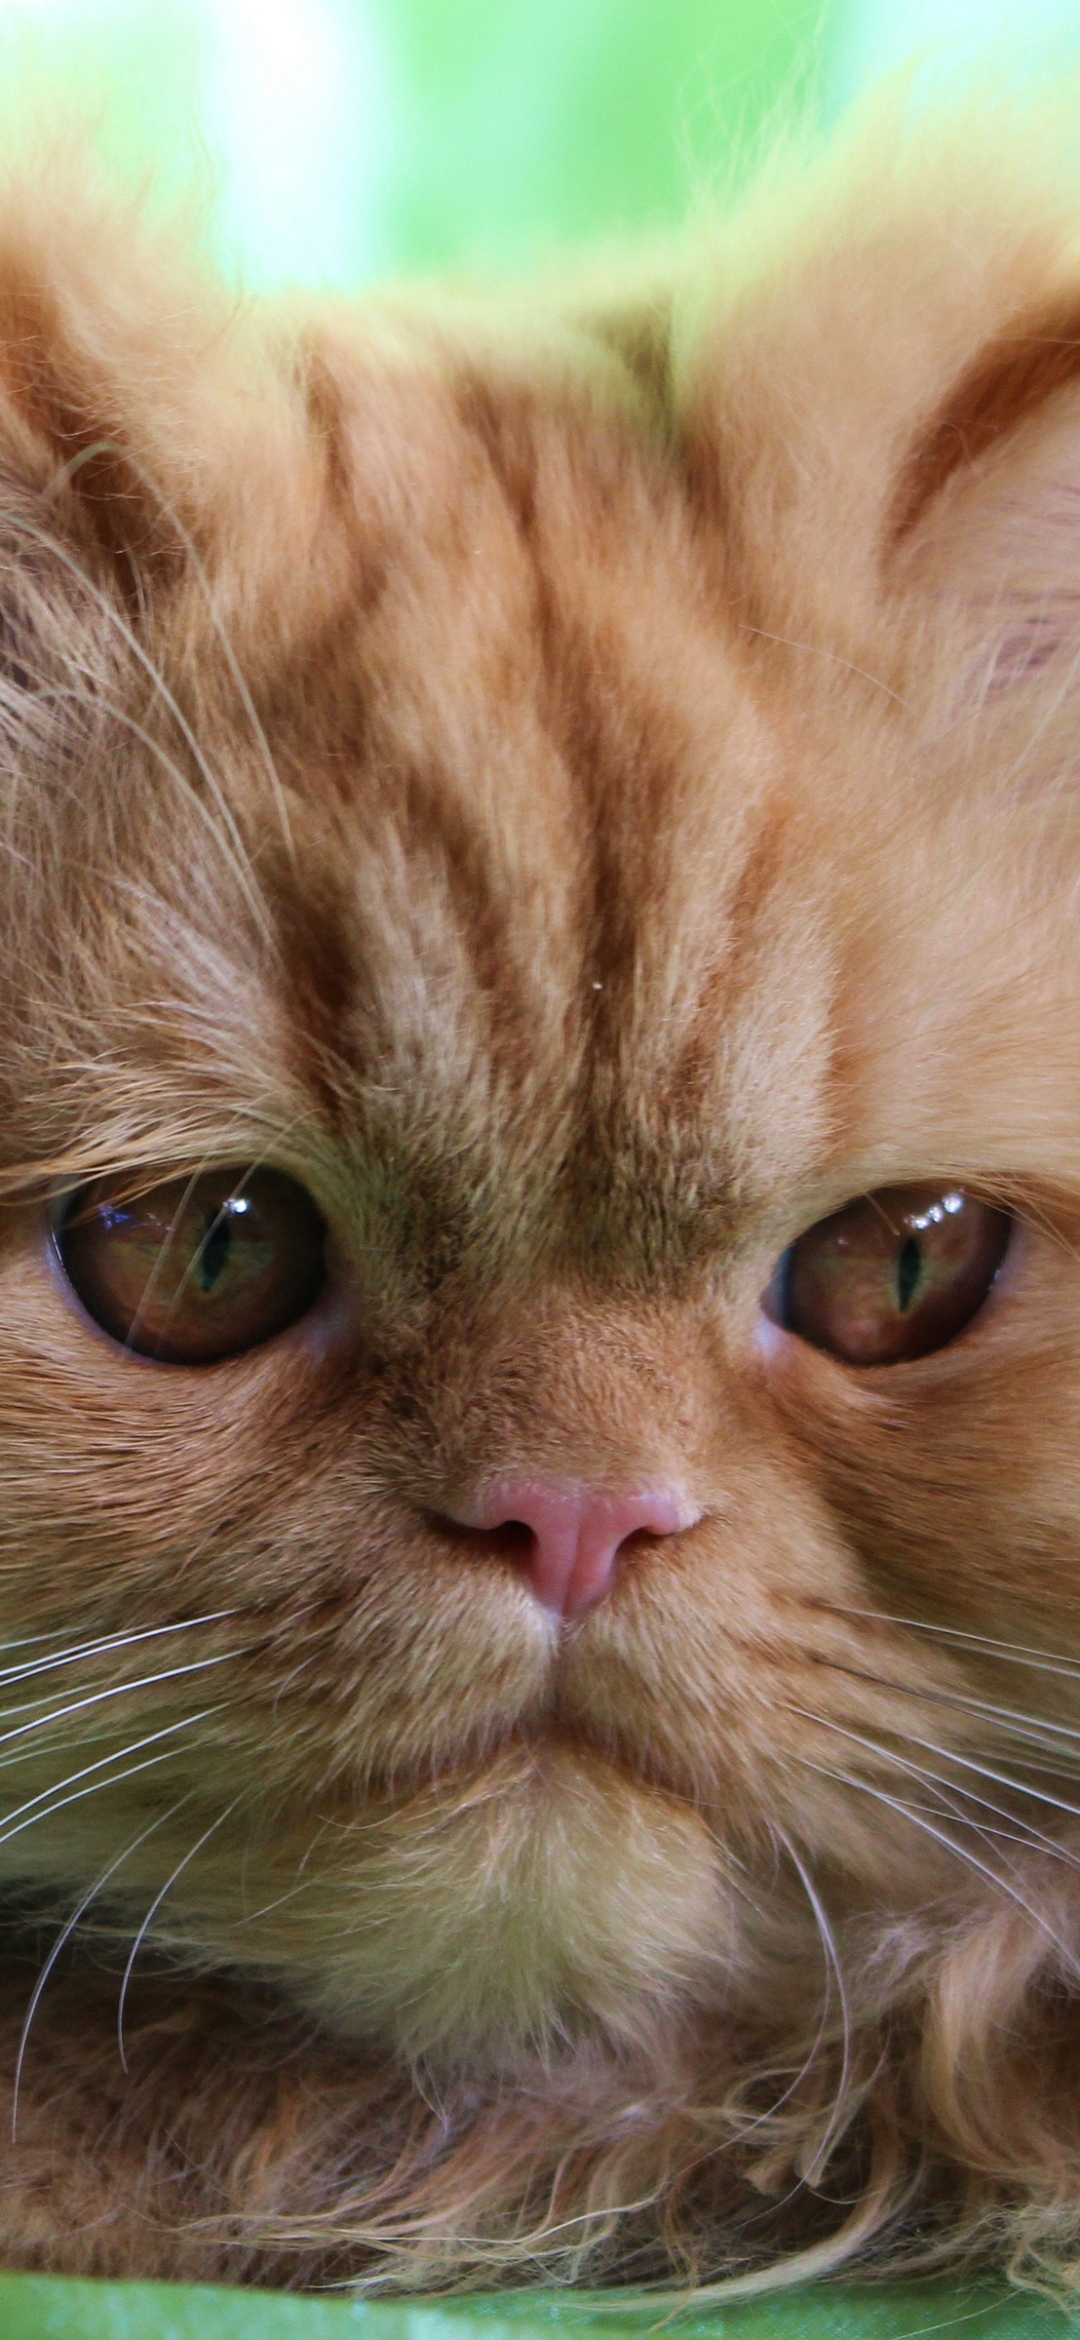 Descarga gratuita de fondo de pantalla para móvil de Animales, Gatos, Gato, Gato Persa.